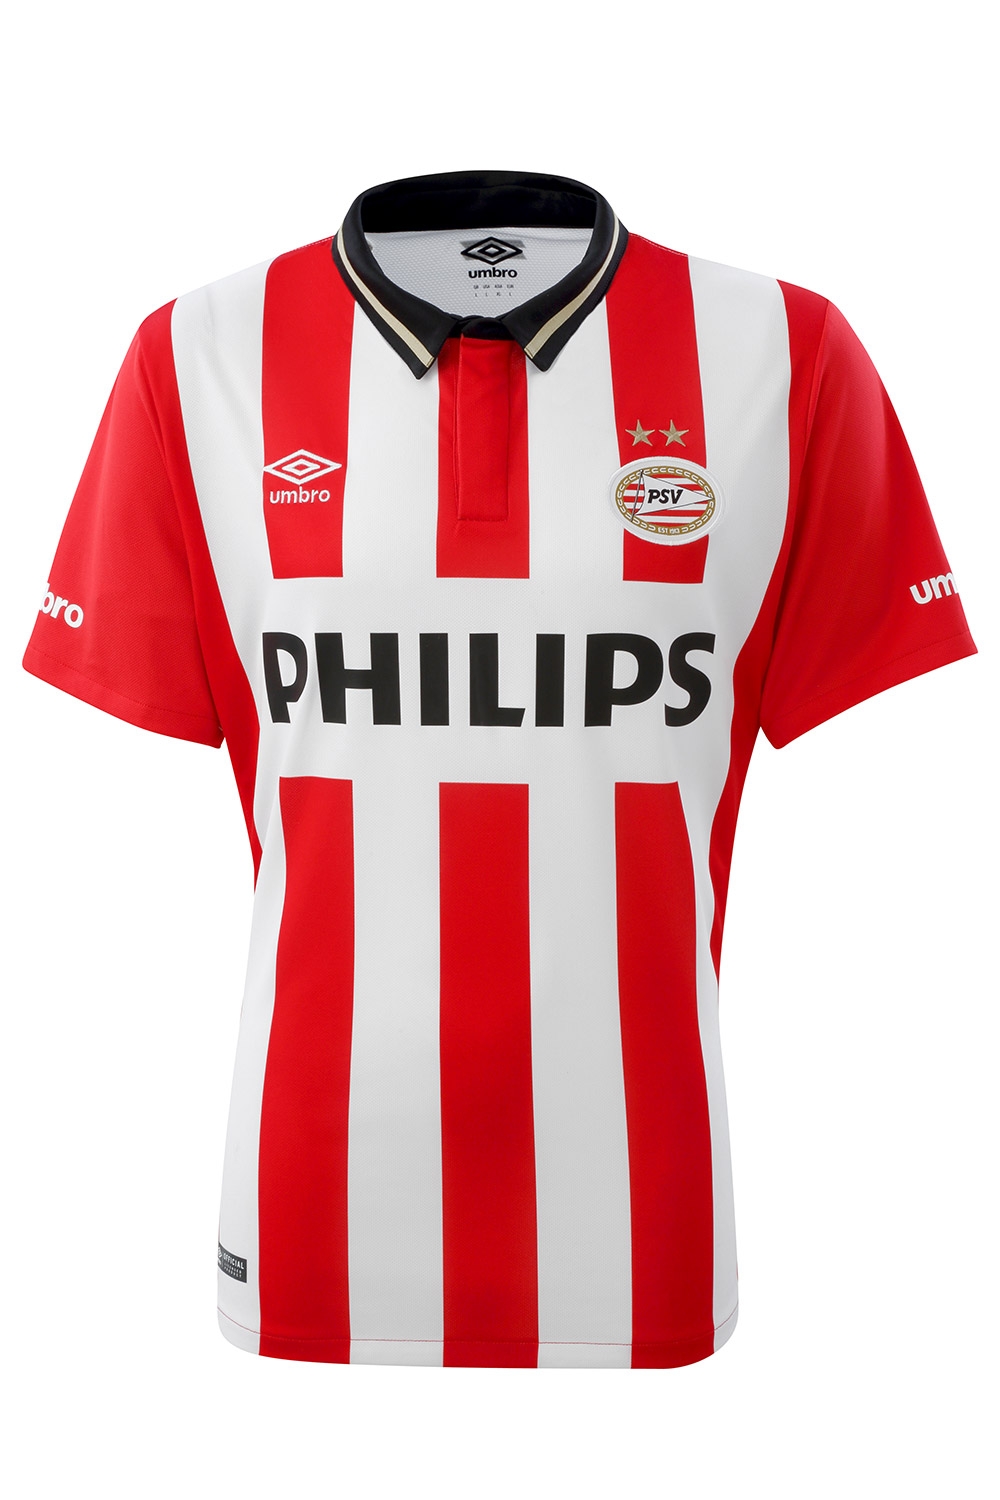 speel piano Vegetatie Moet PSV thuisshirt 2016 - PSV shirt 15/16 kopen